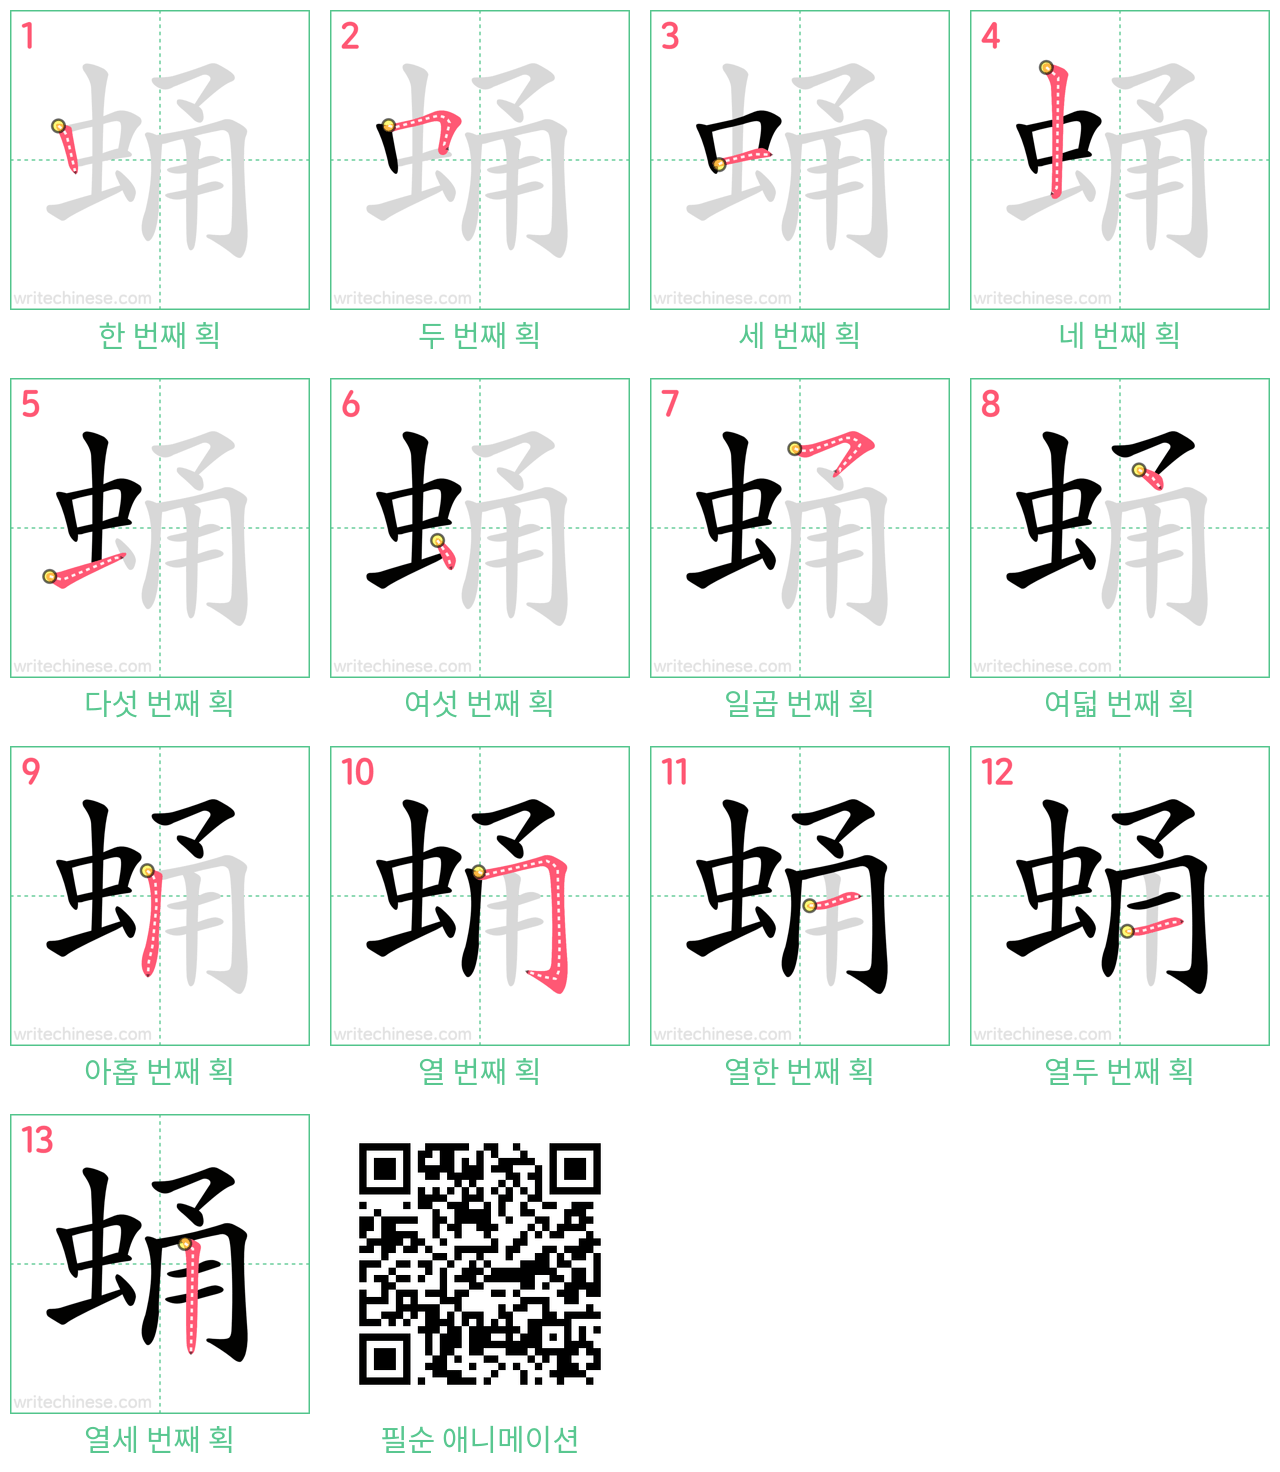 蛹 step-by-step stroke order diagrams